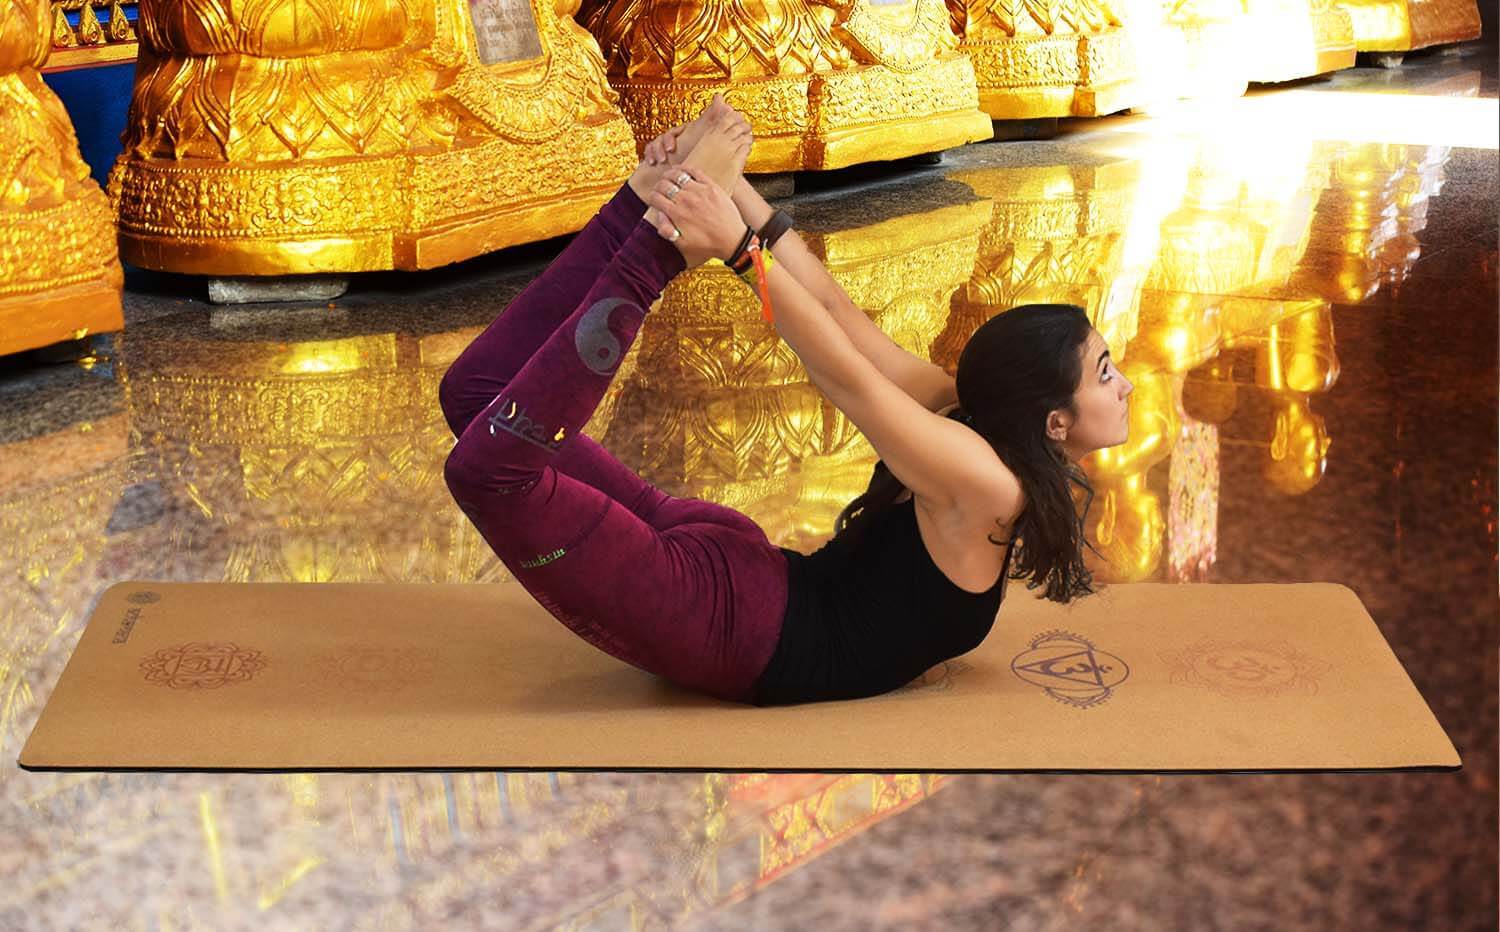 Magasin yoga Grenoble - Yogini en posture en legging yin yang bordeaux sur un tapis de yoga antidérapant liege 7 chakras - temple bouddhiste - Achamana